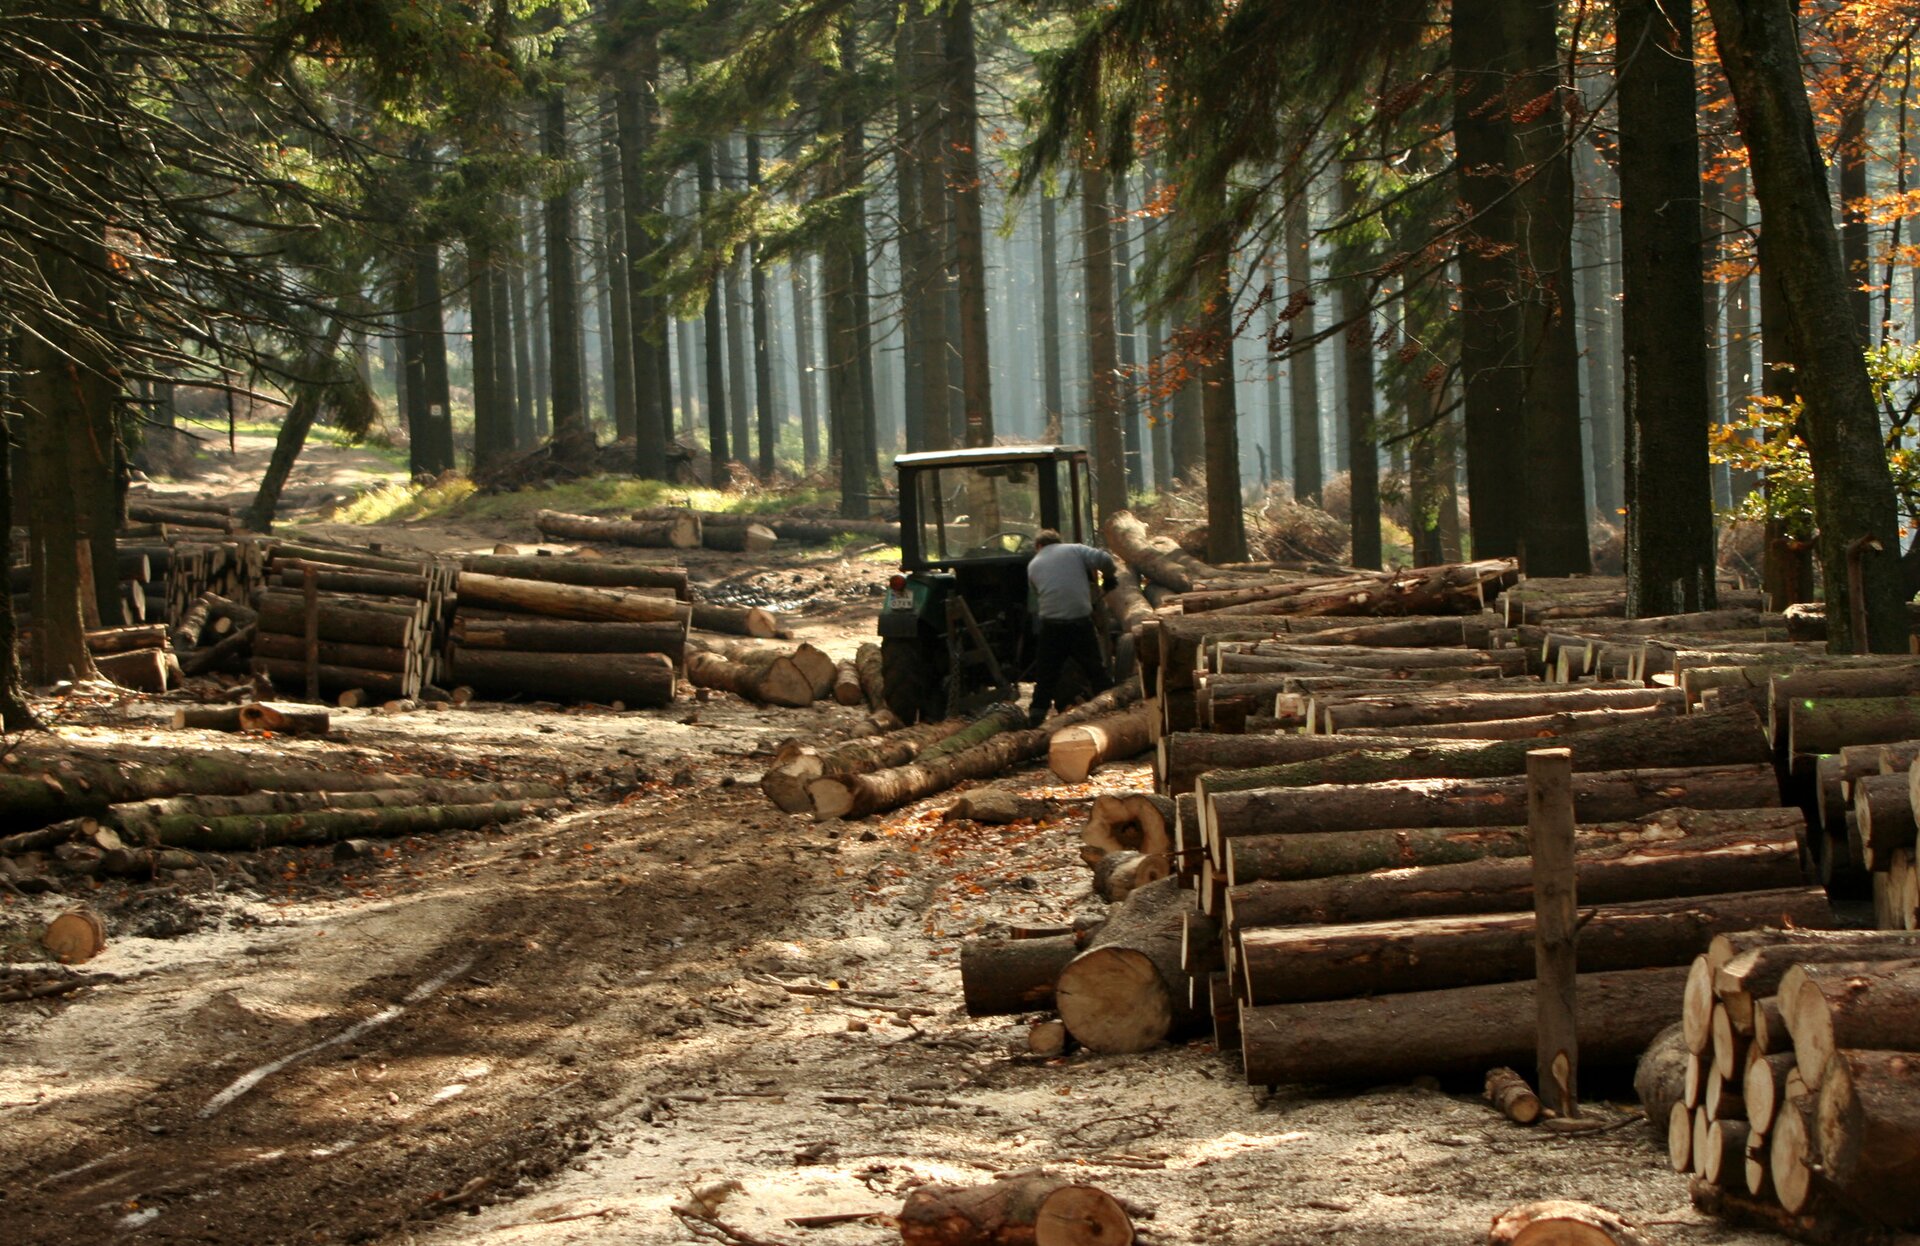 Fotografia przedstawia wnętrze lasu. Przy leśnej drodze stoi ciągnik i człowiek obok. Wokół leżą pnie ściętych drzew, ułożone w sągi. Drewno należy do odnawialnych zasobów przyrody.